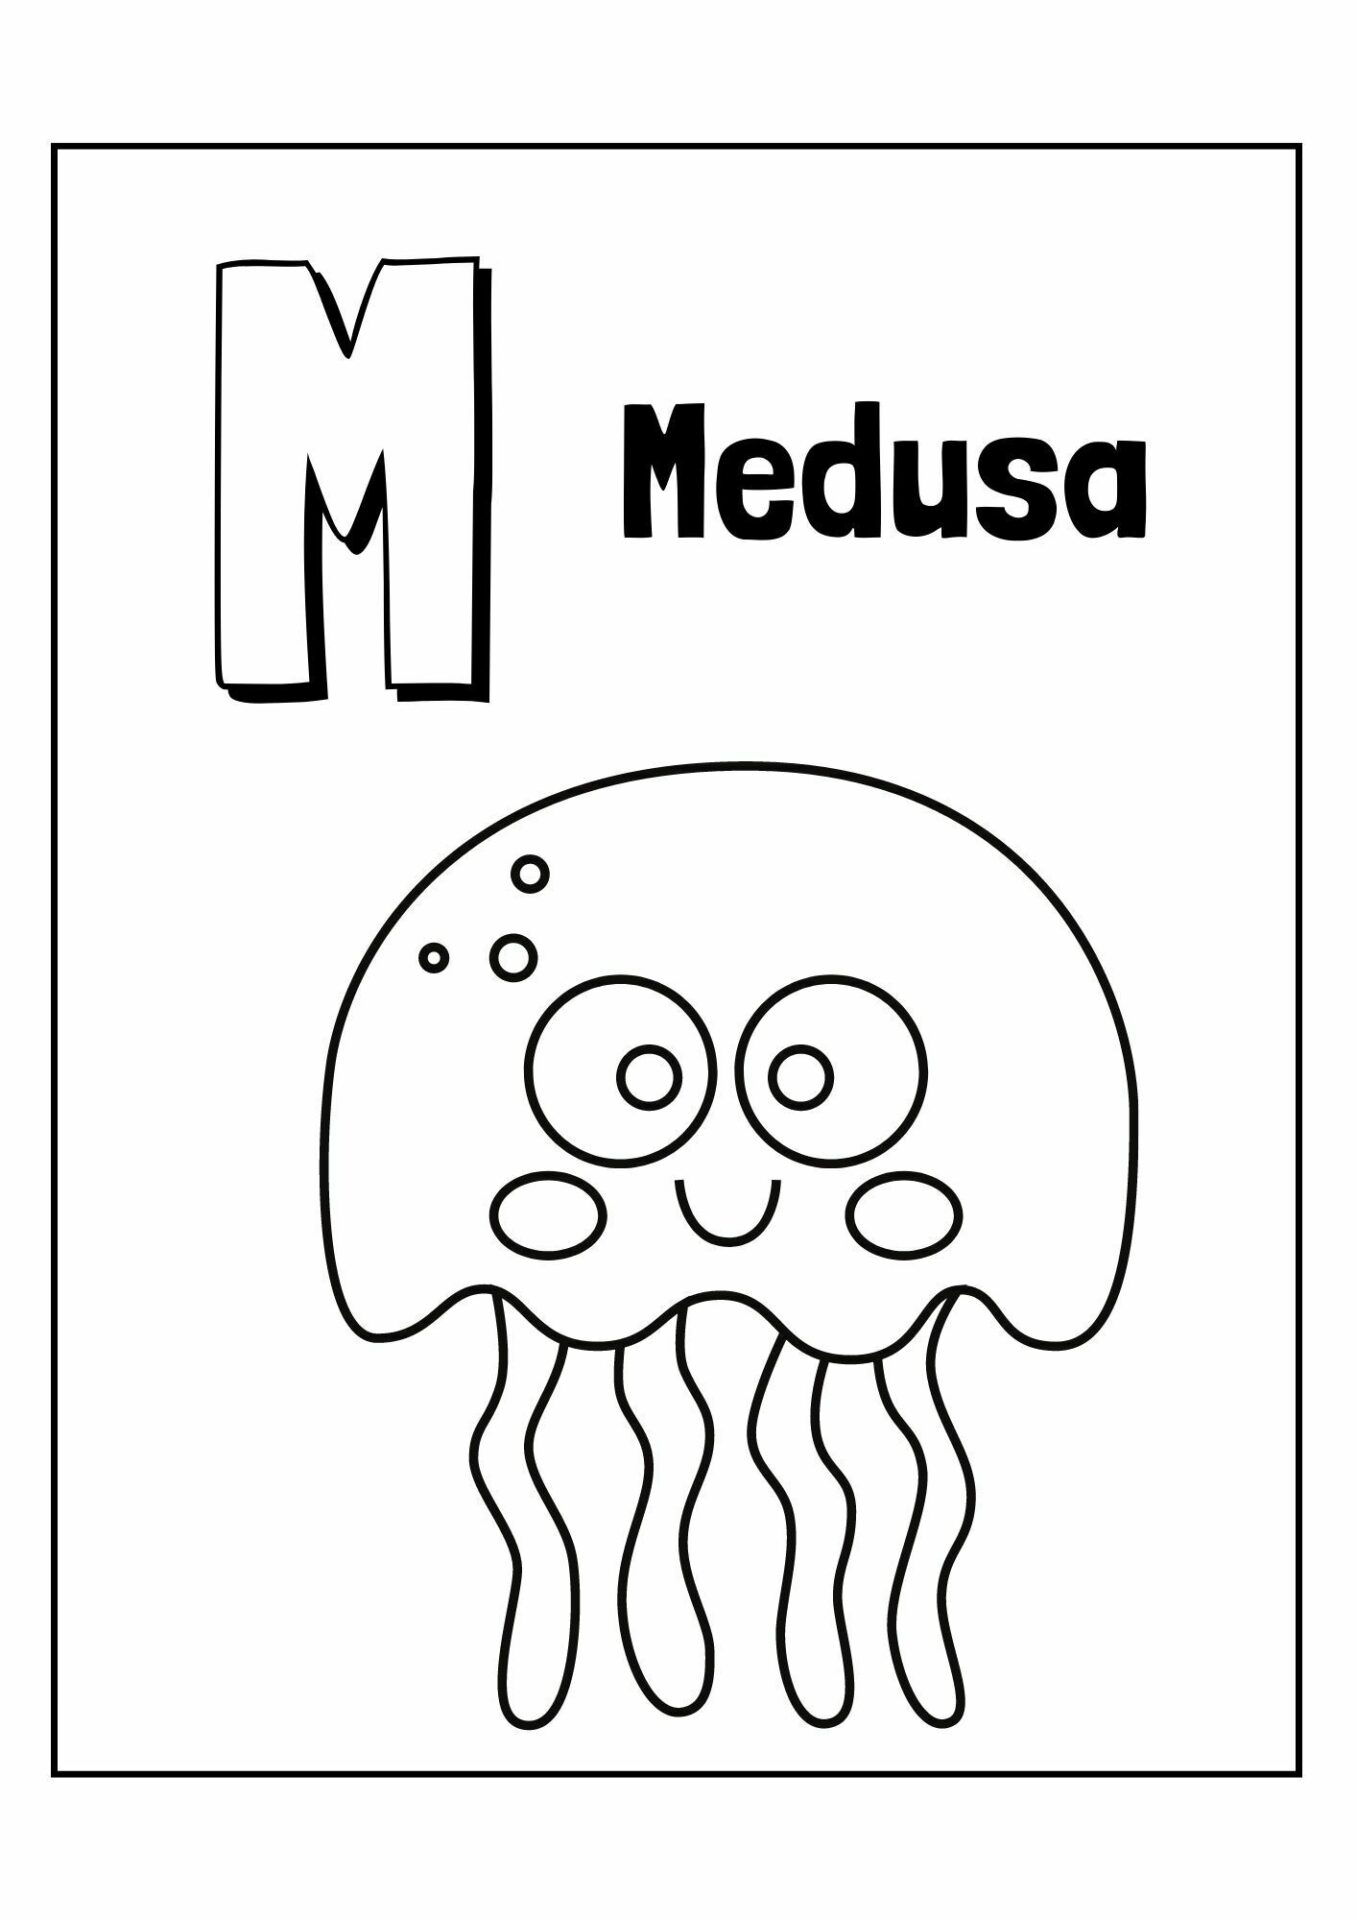 Imagen Medusa